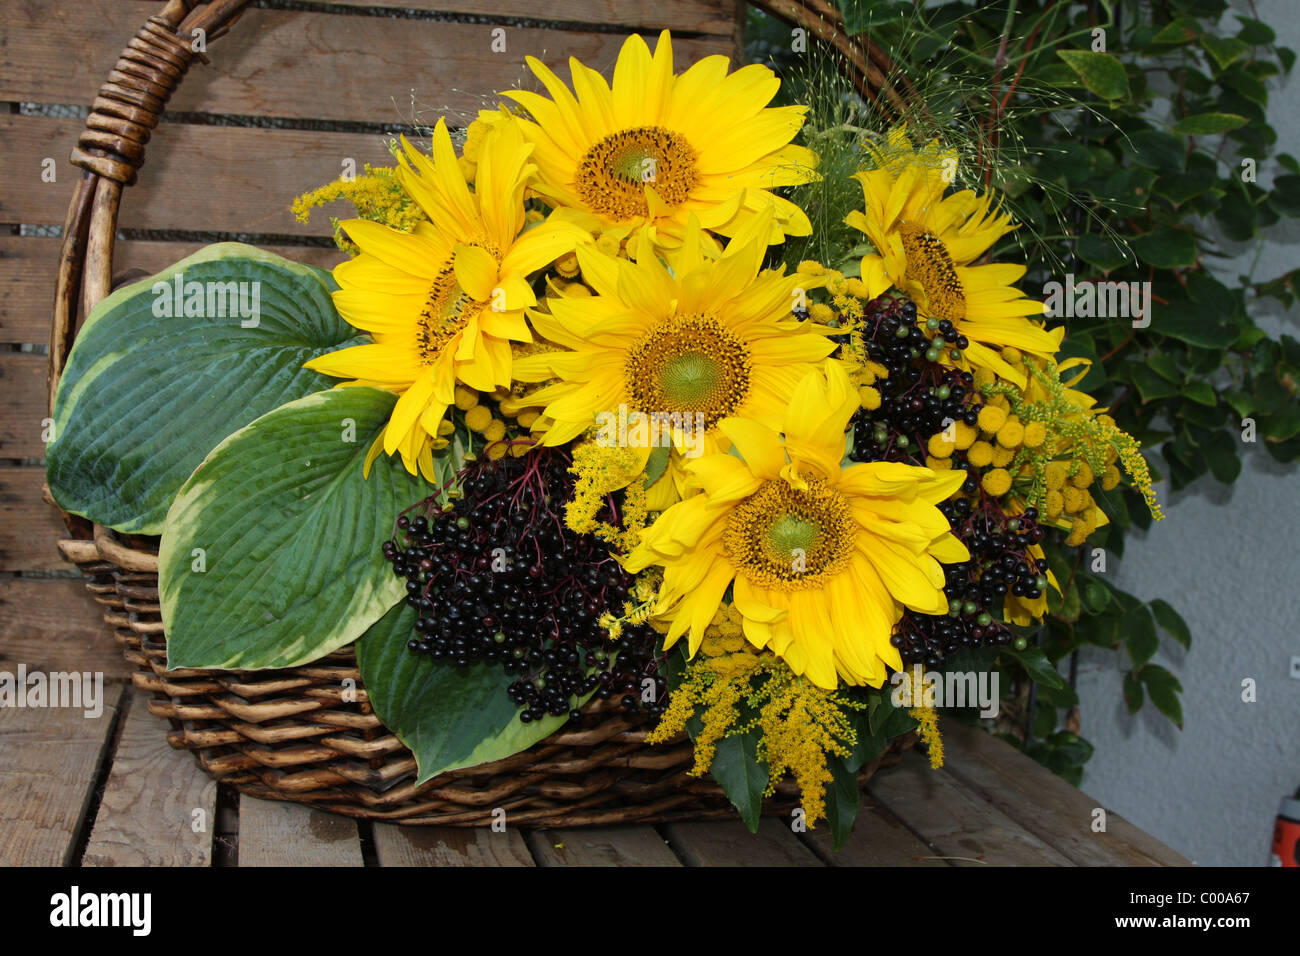 Sonnenblumen im Korb, Blumenbouquet, Sunflowers in basket Stock Photo